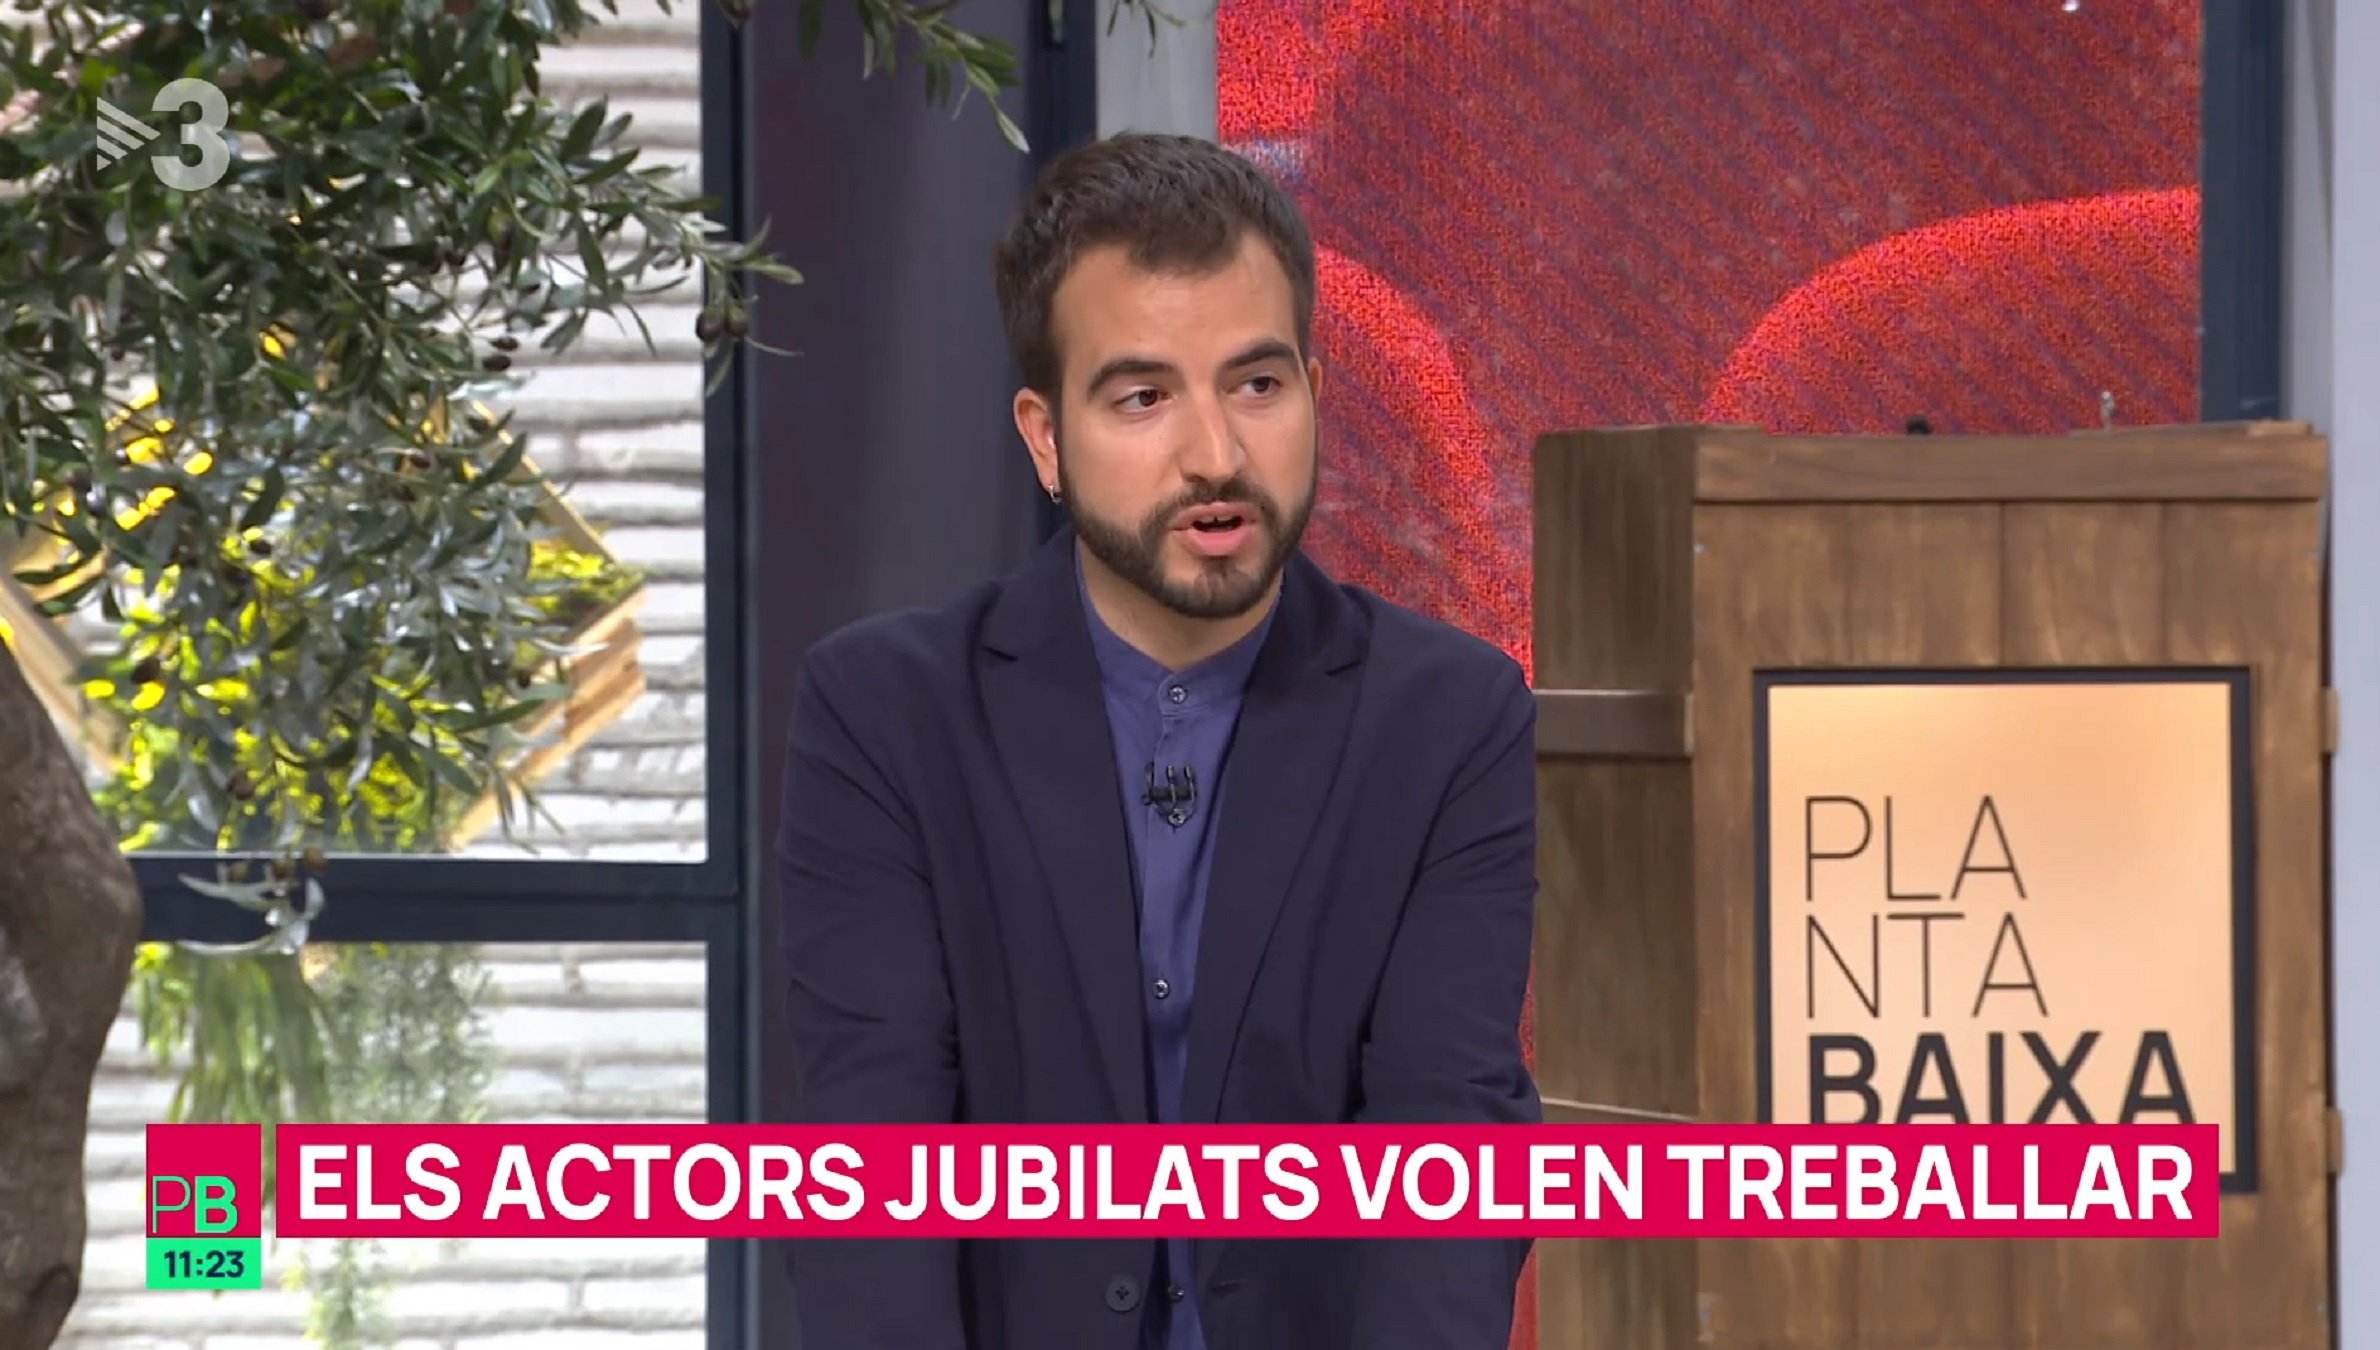 Tres actores catalanes jubilados VIPS piden trabajo en TV3 y lucen lazo amarillo